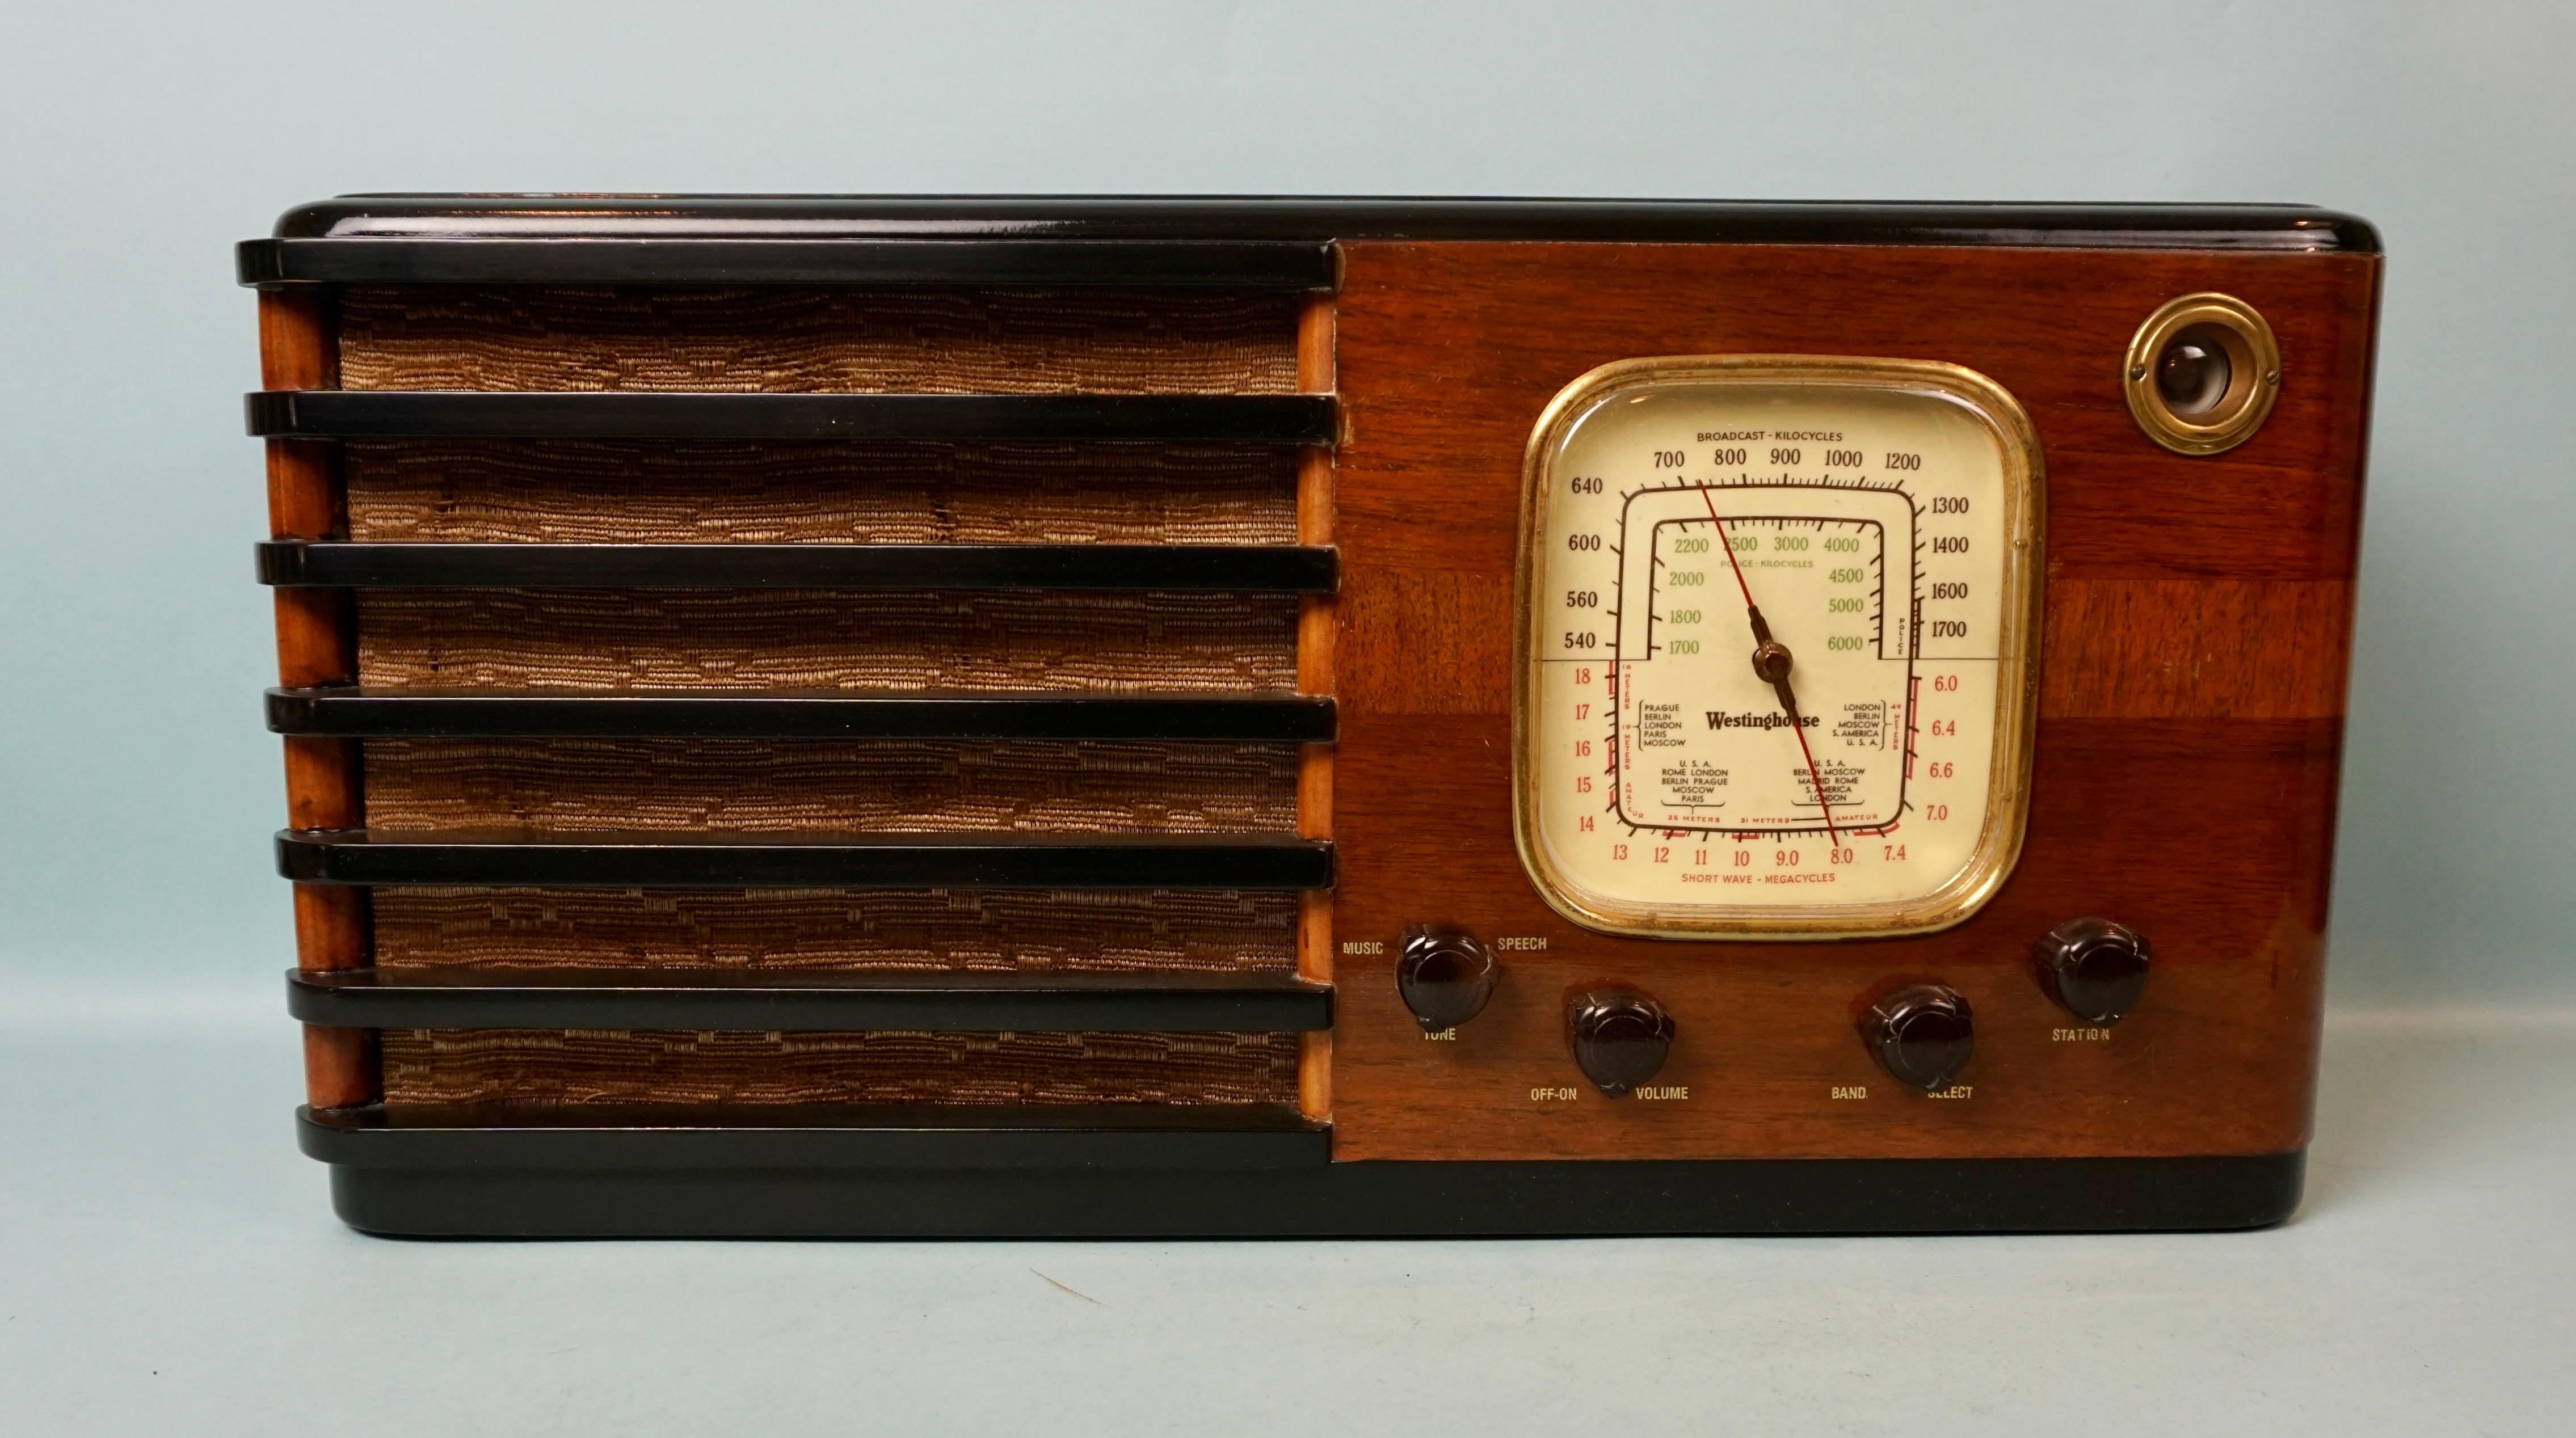 Ein hübsches Westinghouse-Kombinations-Kurzwellenradio. Das Gehäuse aus französisch poliertem Mahagoni beherbergt ein Röhrenwerk mit mehreren Radioeinstellungen, hergestellt und signiert von Westinghouse. Dieses Radio verfügt über eine